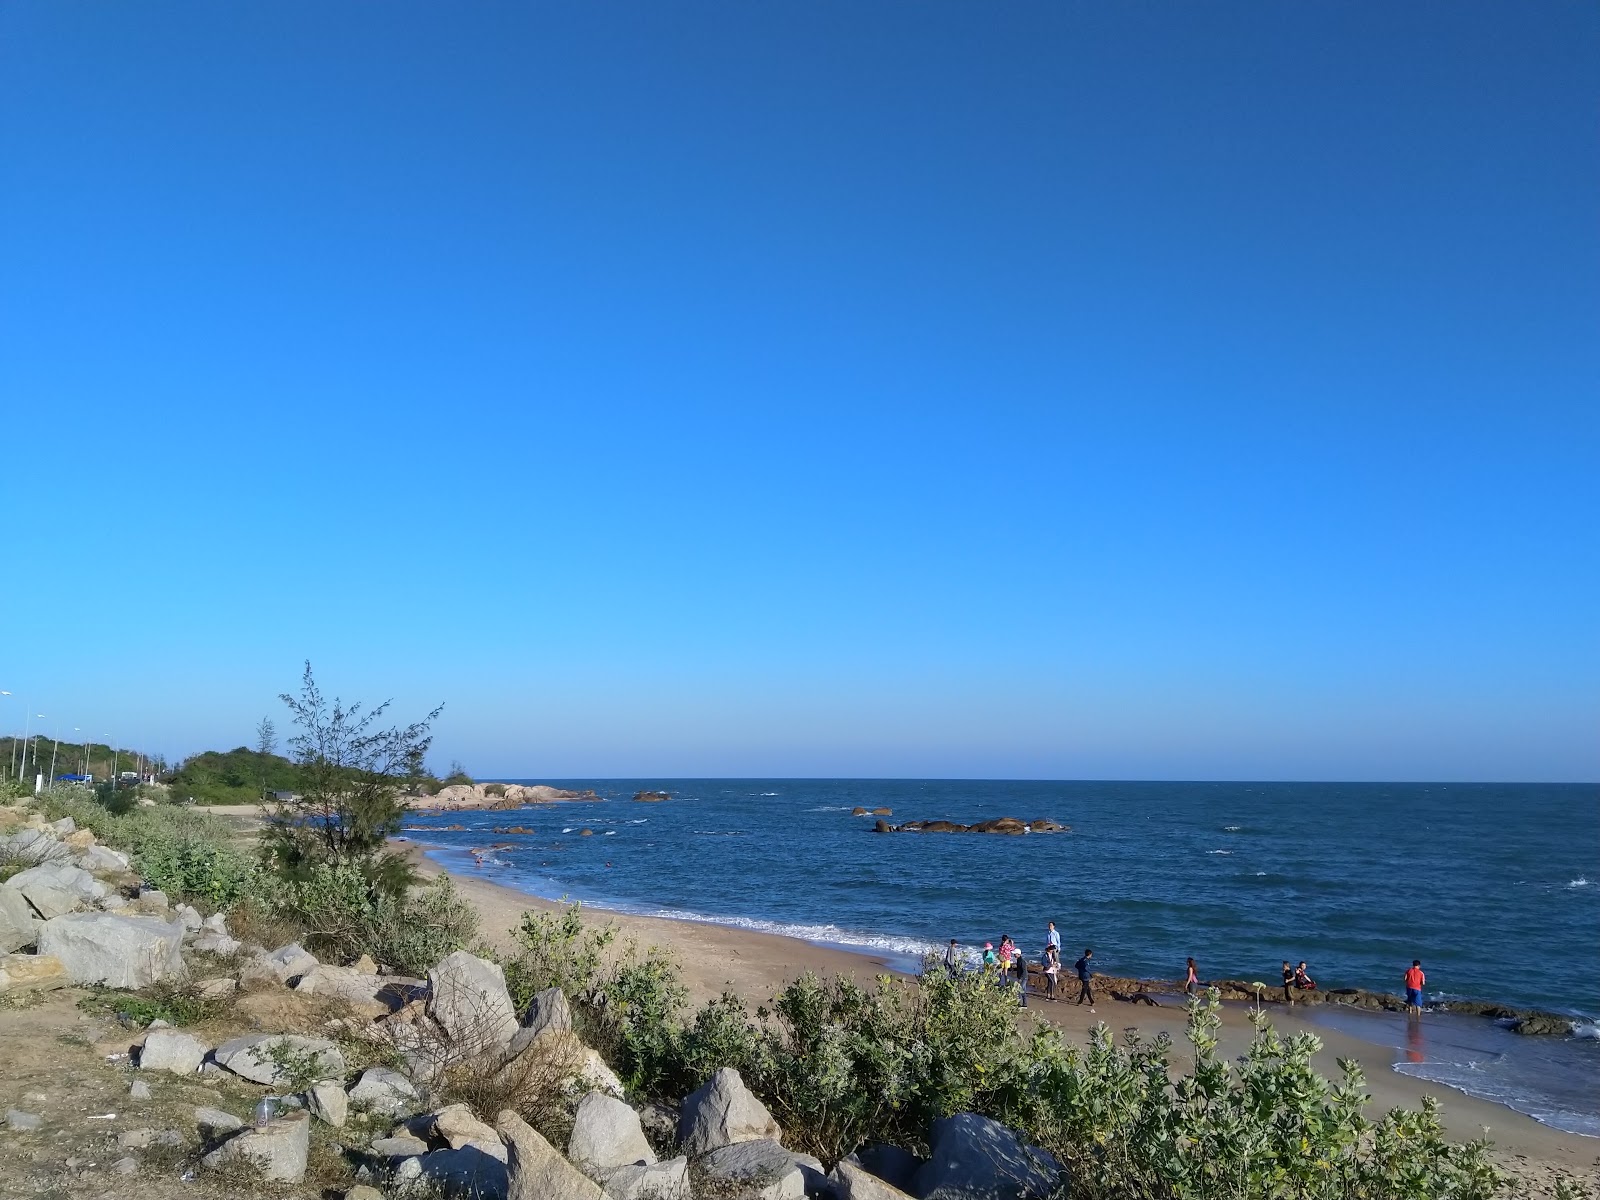 Fotografie cu Binh Chau beach - locul popular printre cunoscătorii de relaxare